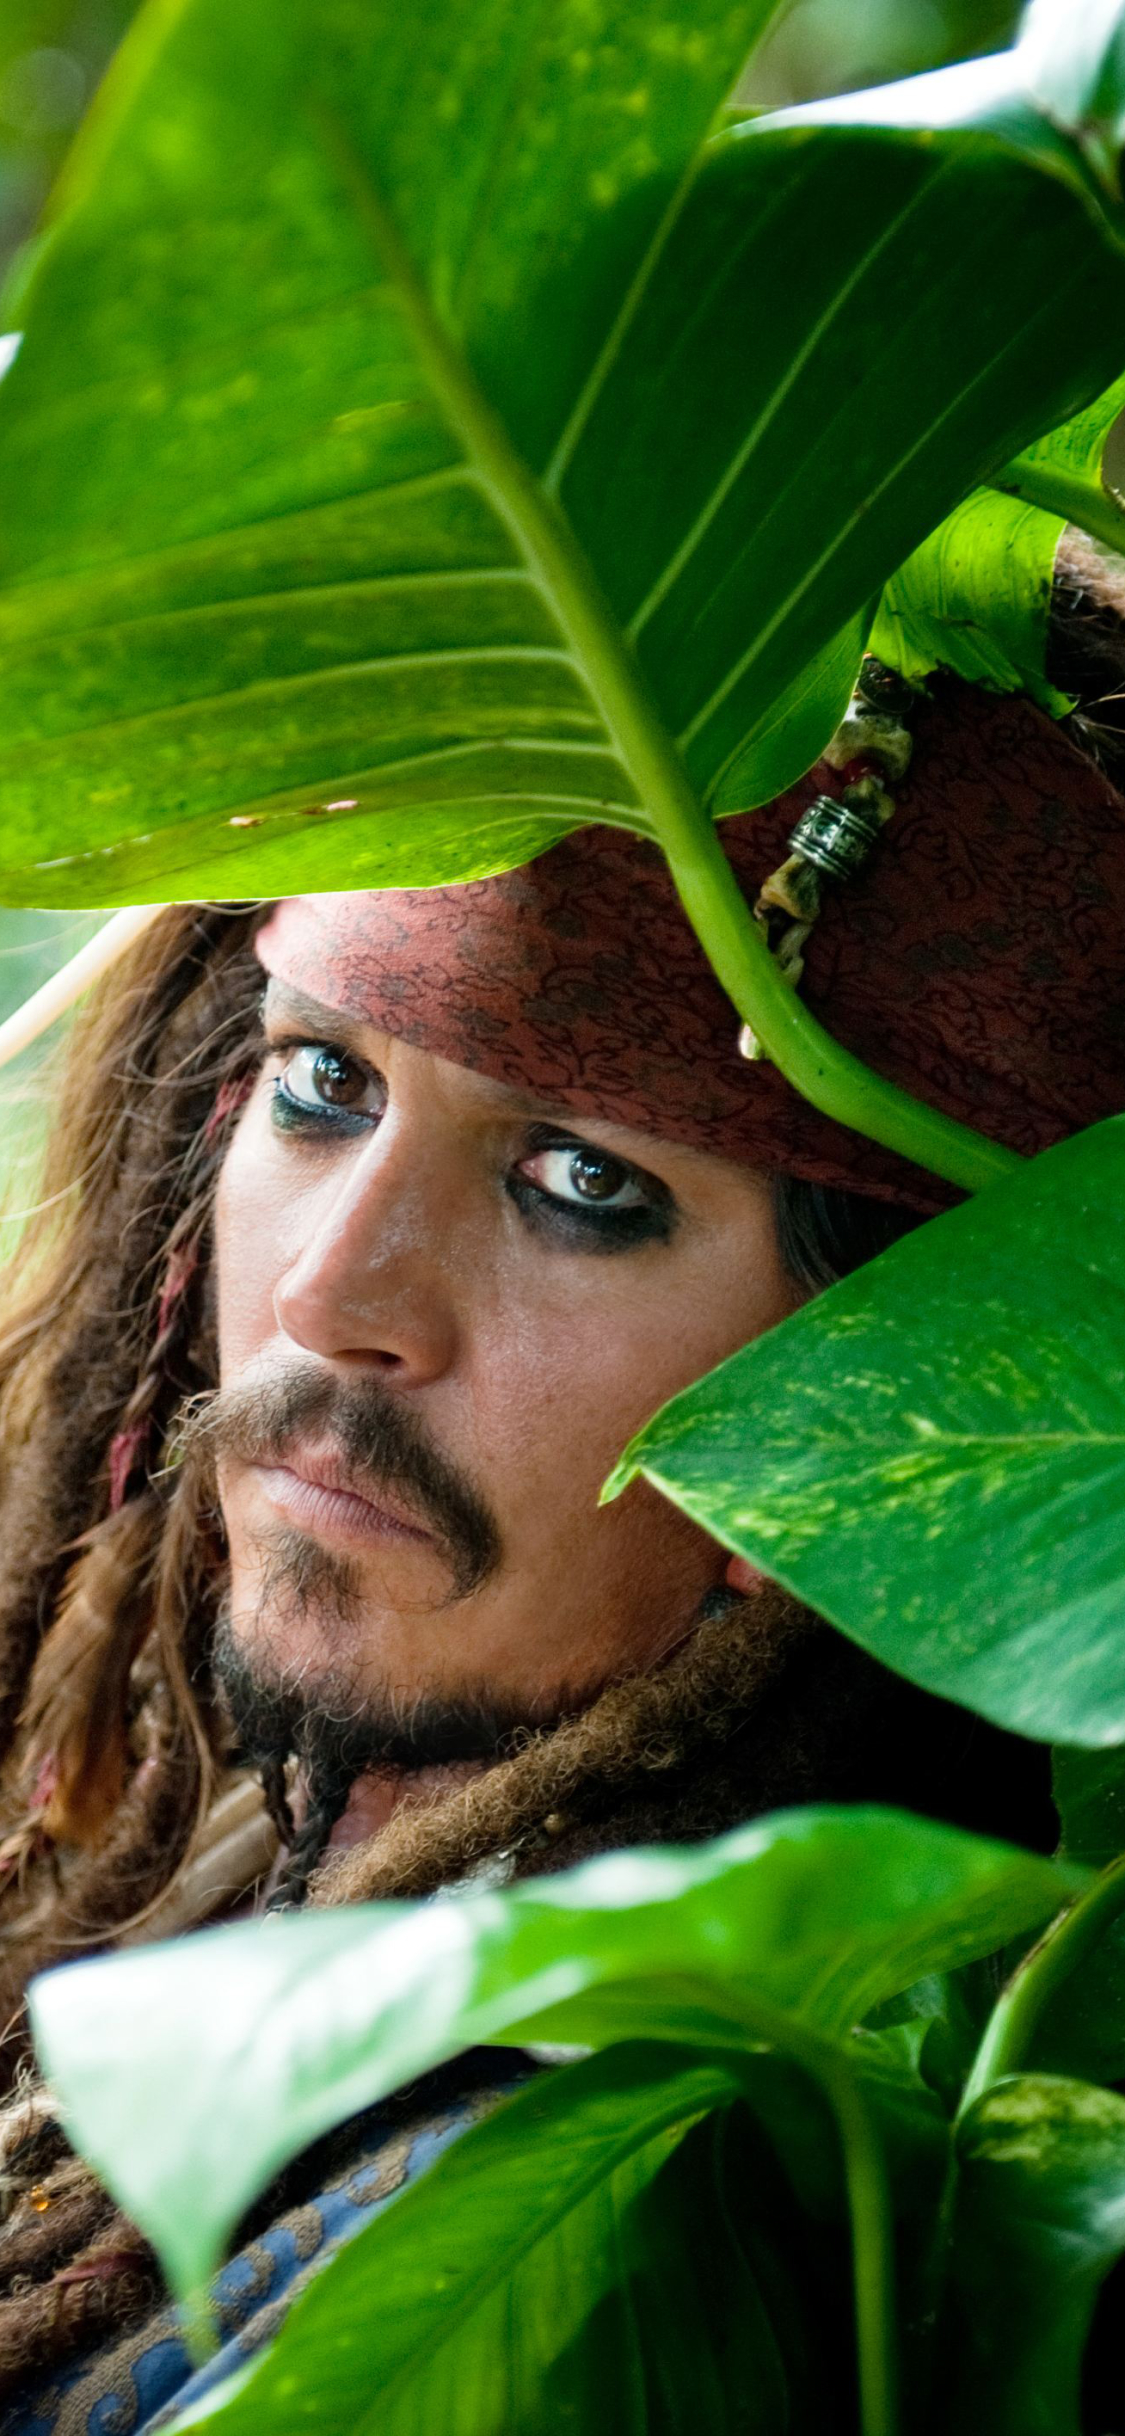 Descarga gratuita de fondo de pantalla para móvil de Piratas Del Caribe, Johnny Depp, Gorrión, Pirata, Películas, Piratas Del Caribe: En Mareas Misteriosas.